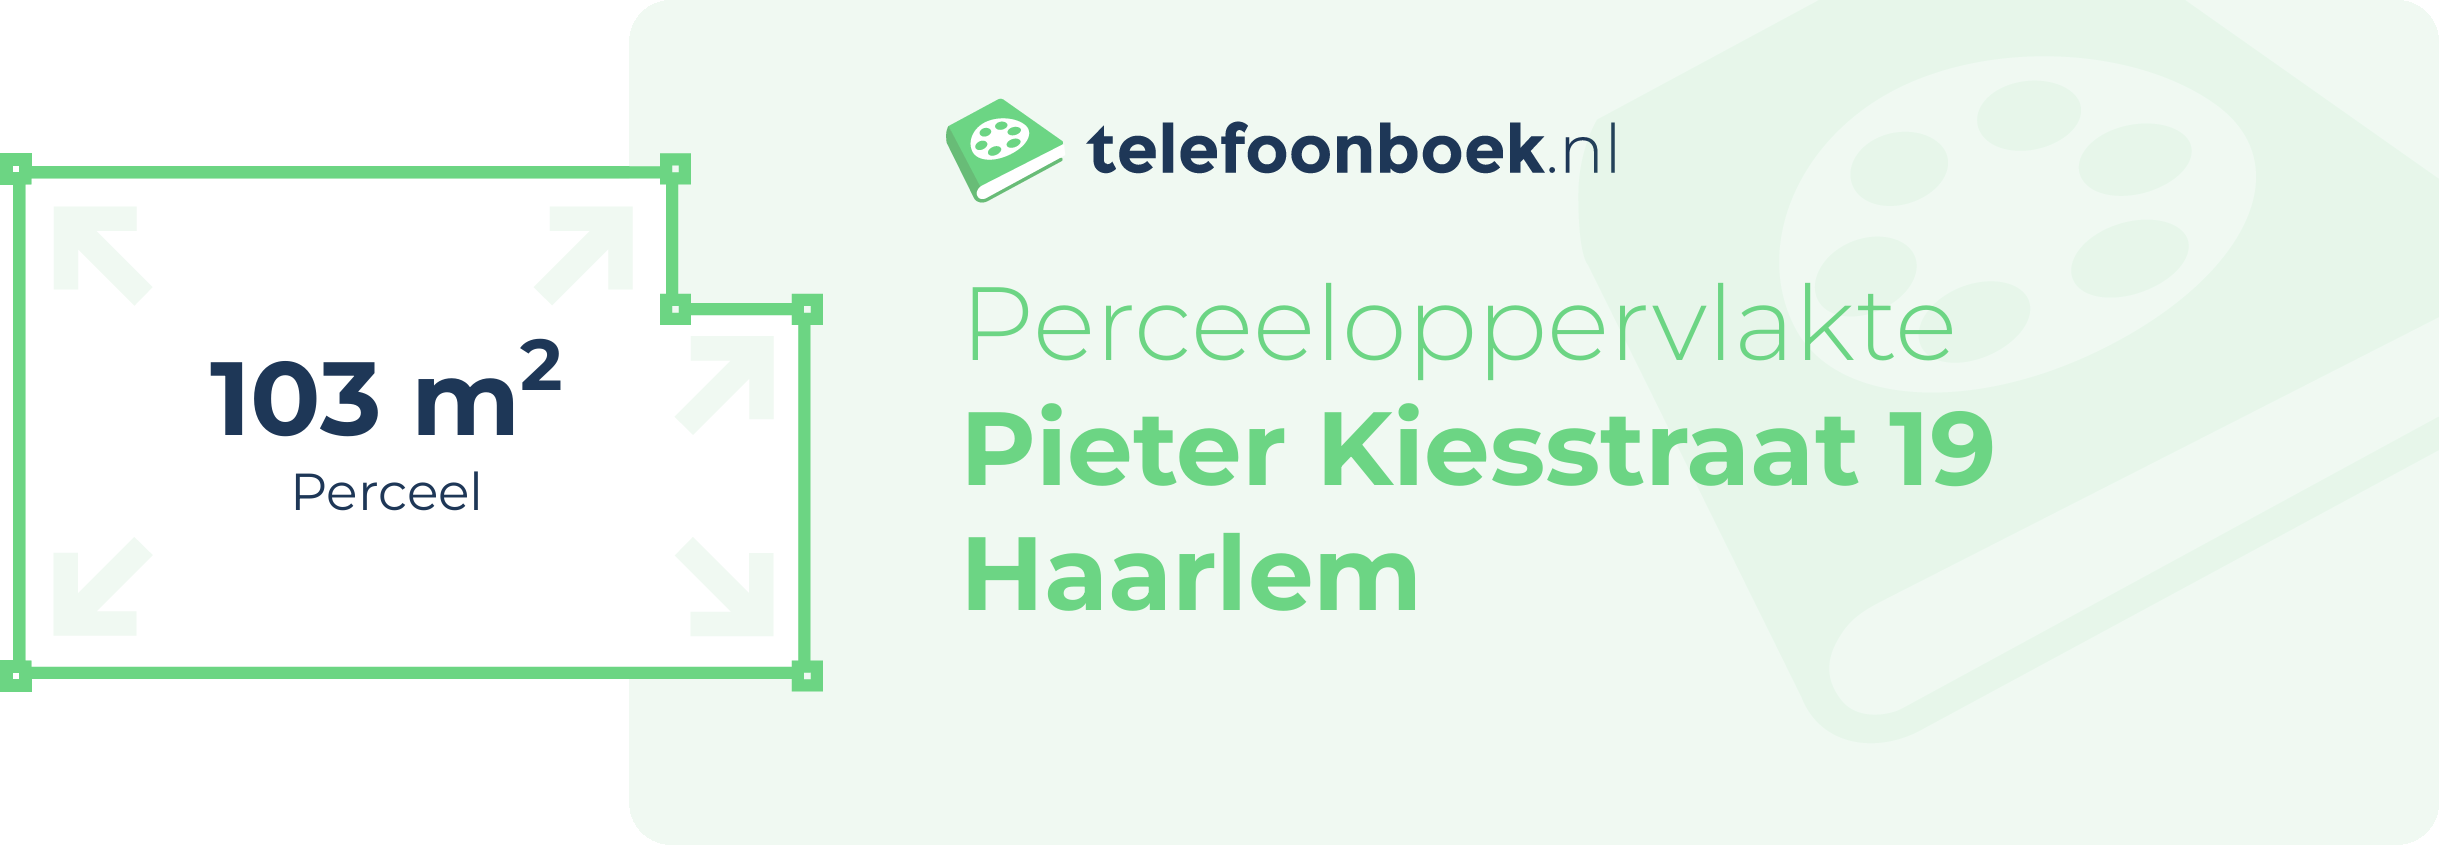 Perceeloppervlakte Pieter Kiesstraat 19 Haarlem